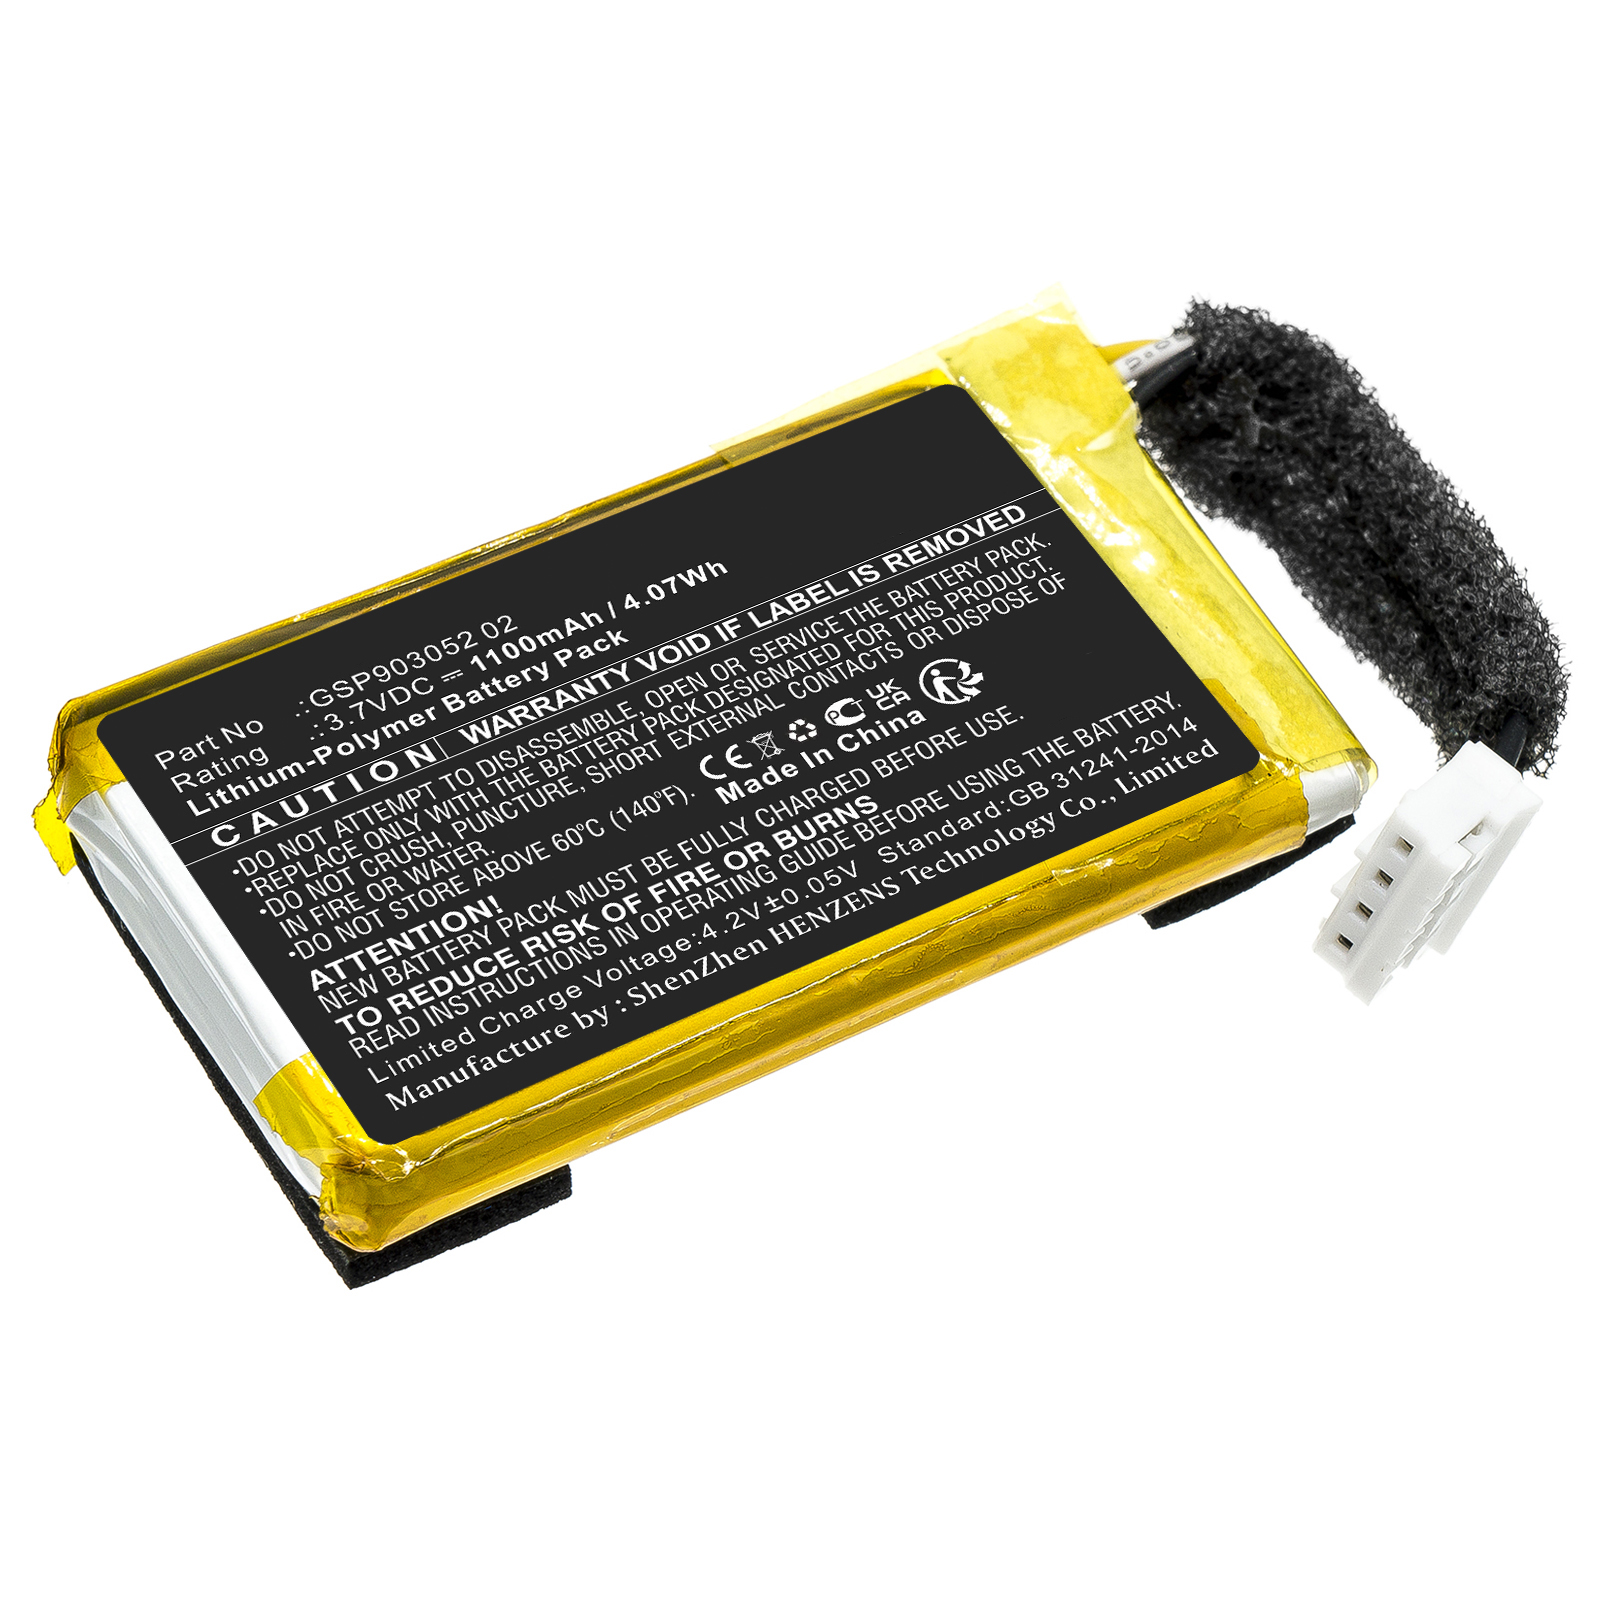 Synergy Digital Speaker Battery, Compatible with JBL GSP903052 02 Speaker Battery (Li-Pol, 3.7V, 1100mAh)